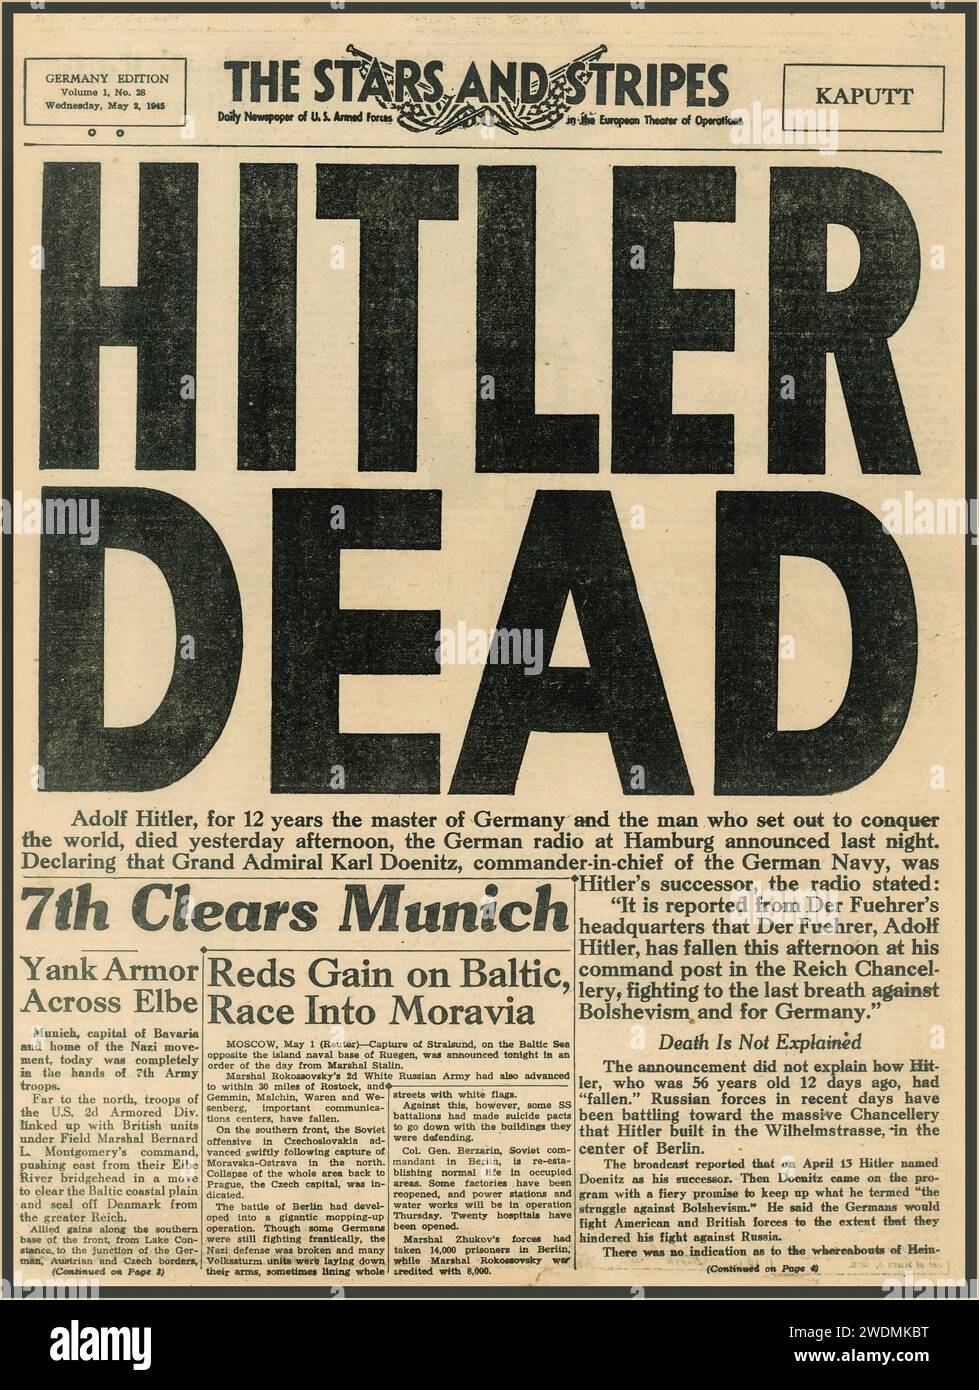 Titolo di giornale "HITLER MORTO" che dichiara che Adolf Hitler è morto. 2 maggio 1945. Quotidiano militare Stars and Stripes seconda guerra mondiale seconda guerra mondiale. L'inizio della fine della seconda guerra mondiale in Europa. Foto Stock